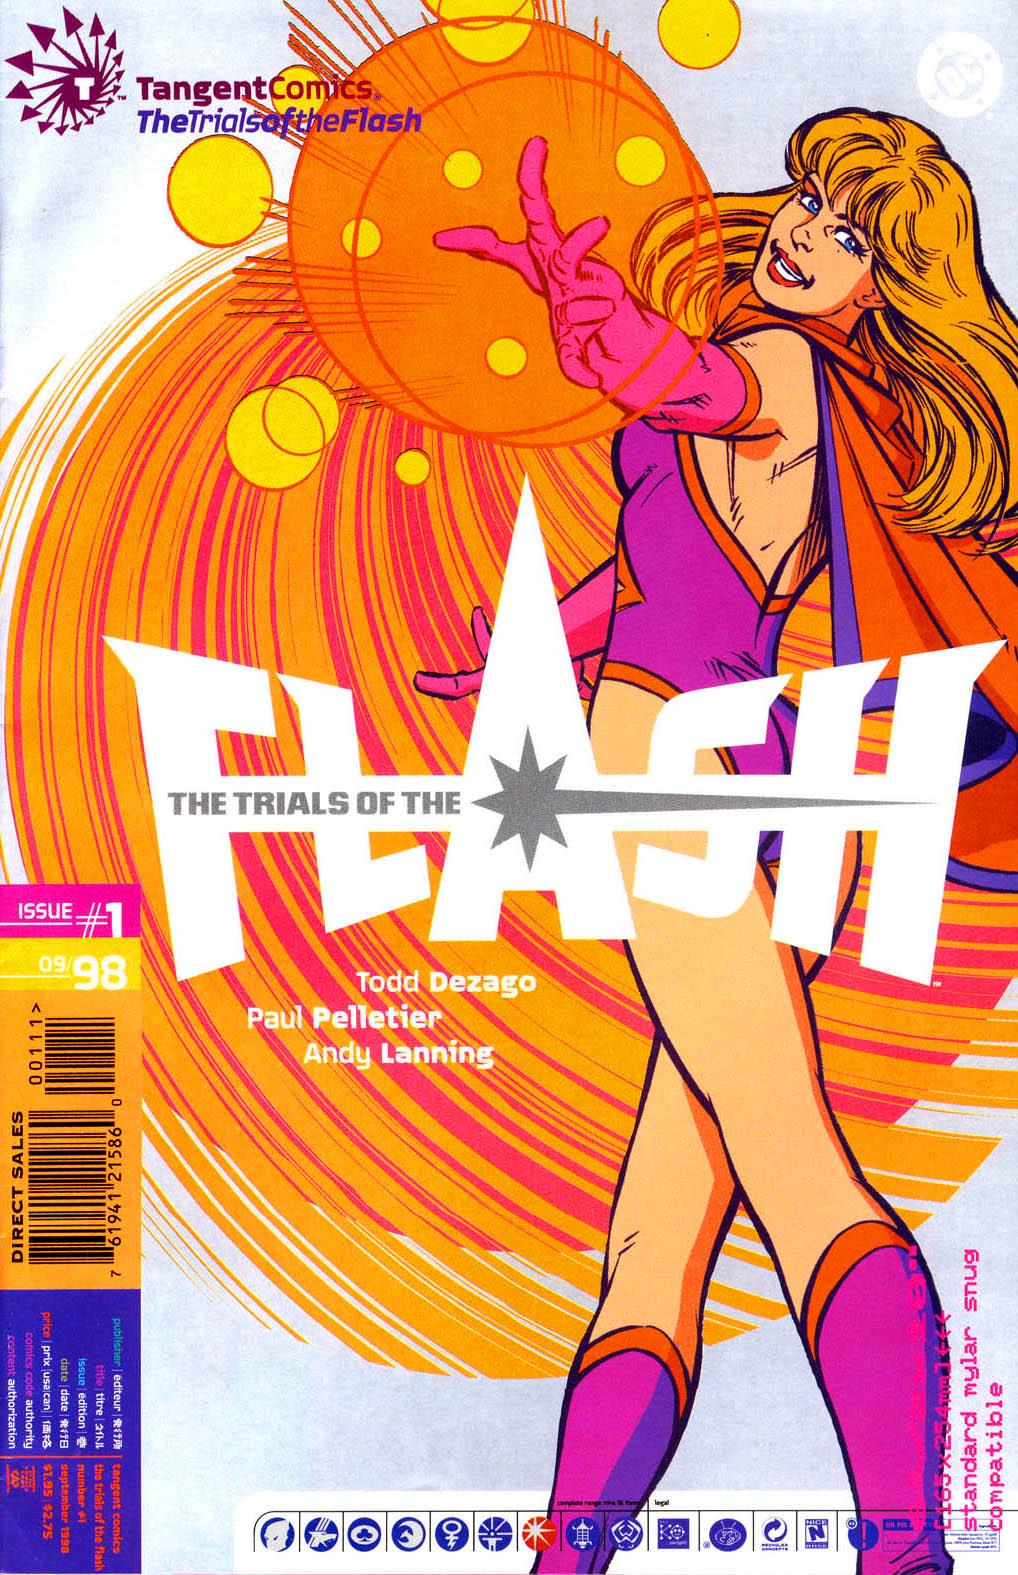 Tangent Comics: The Trials of the Flash Vol. 1 #1